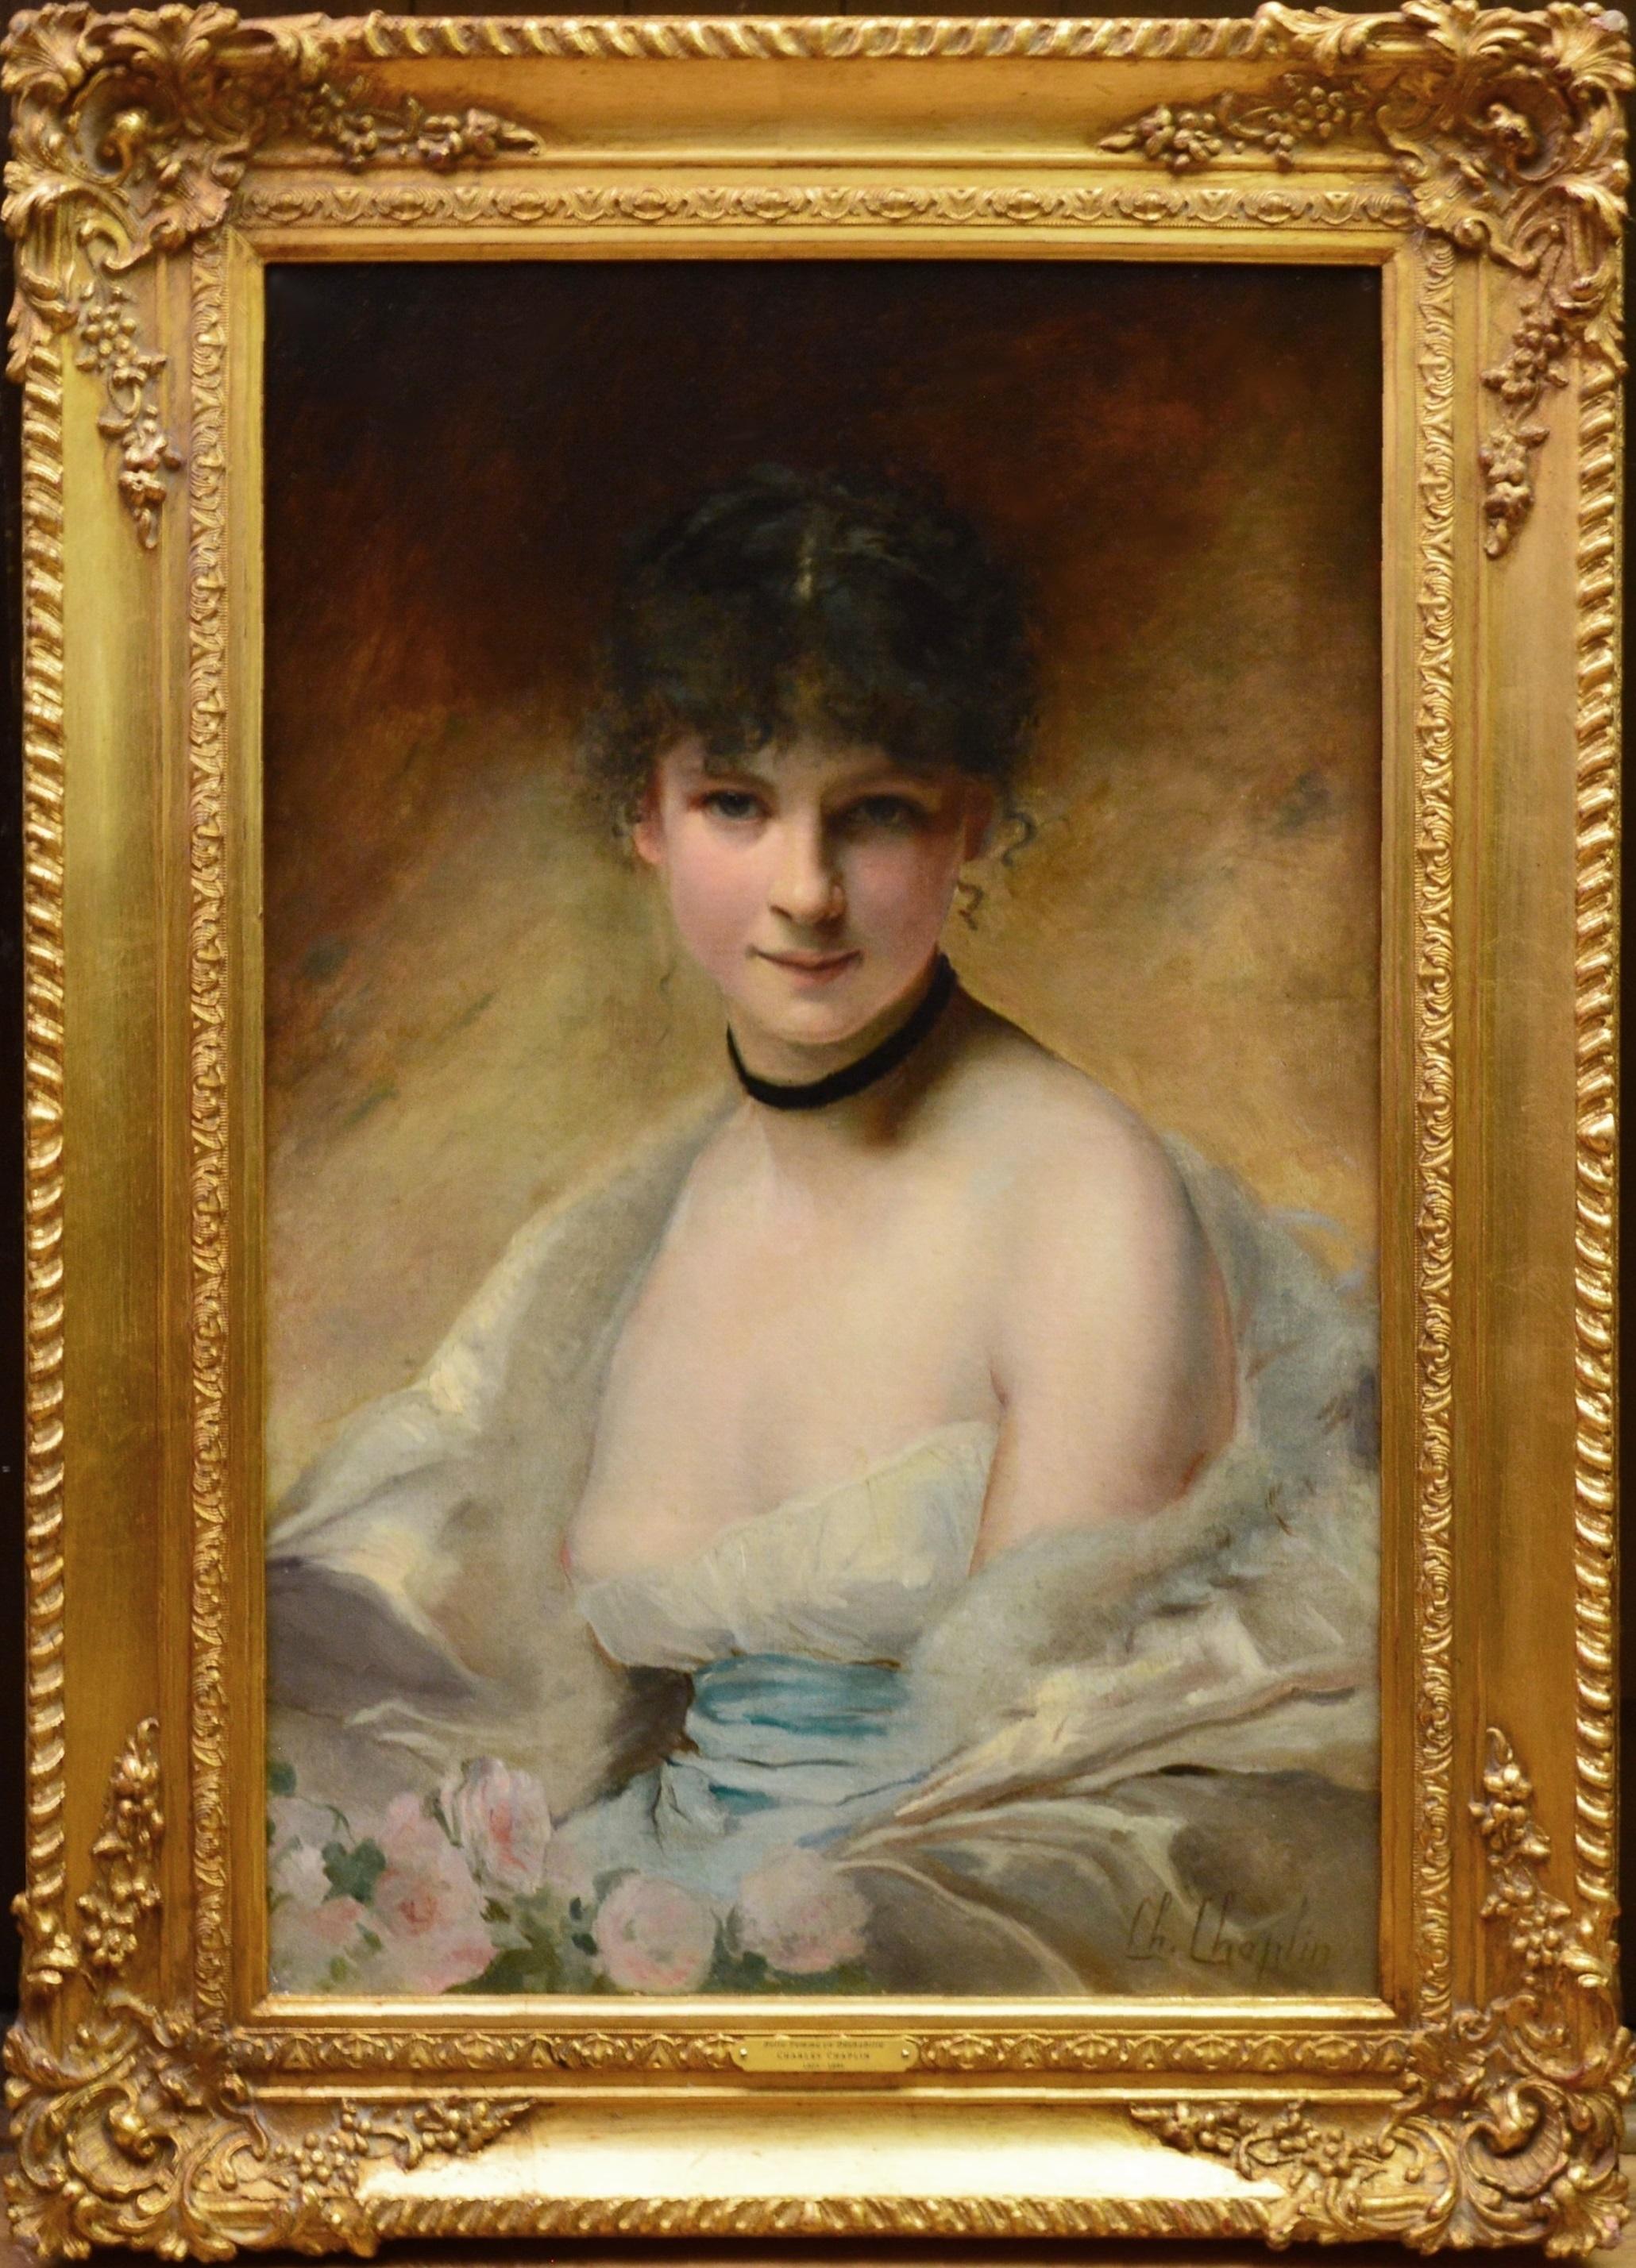 Charles Joshua Chaplin Portrait Painting - Belle Femme en Déshabillé - 19th Century French Salon Portrait of Society Beauty